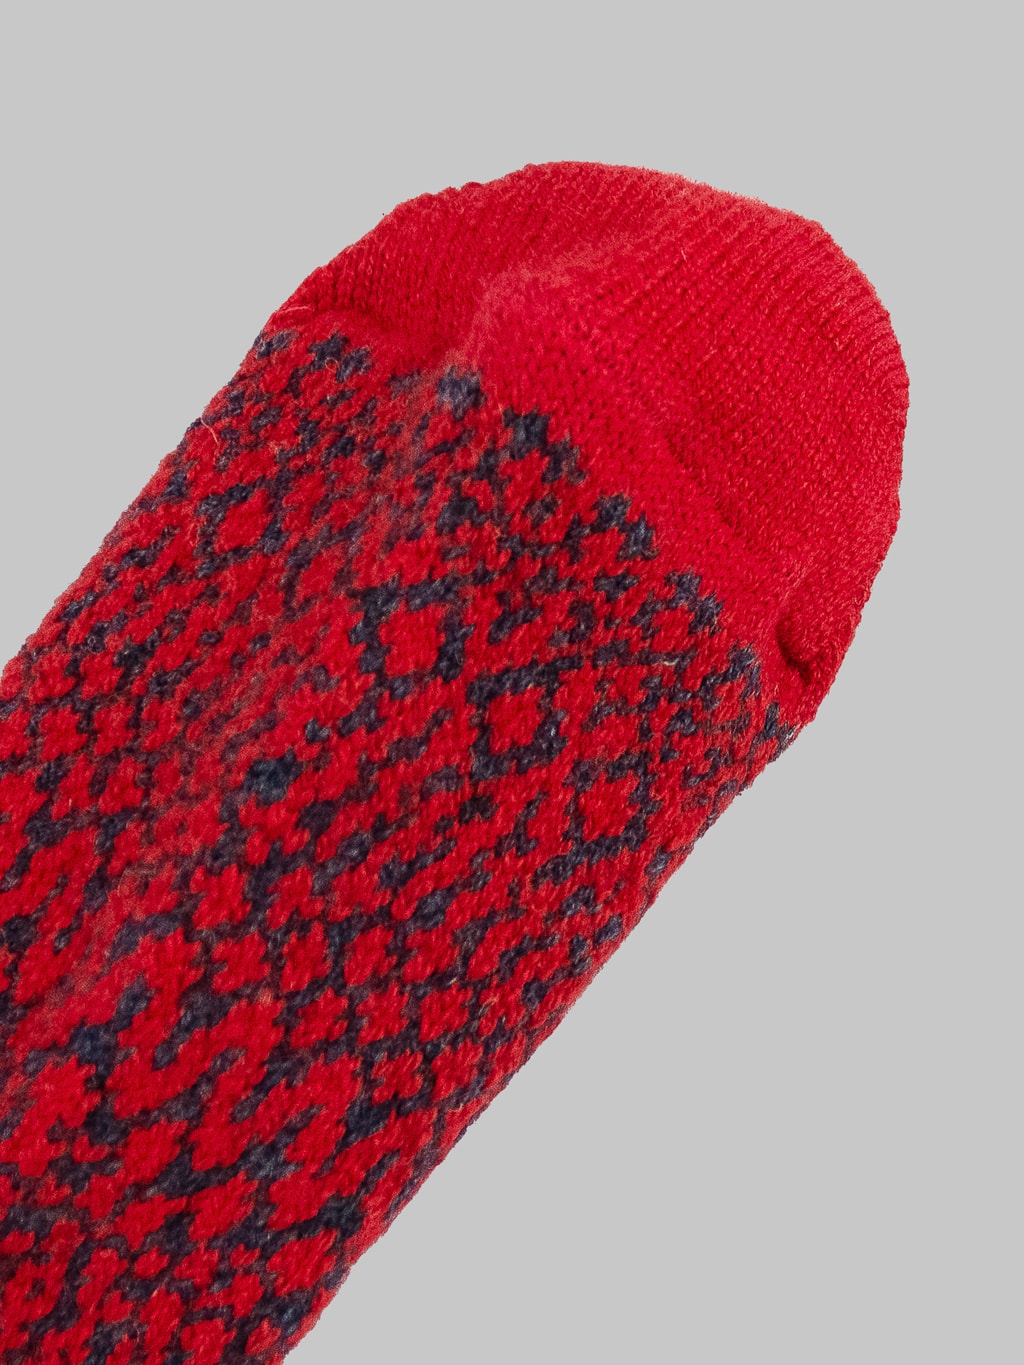 nishiguchi kutsushita oslo wool jacquard socks red toe